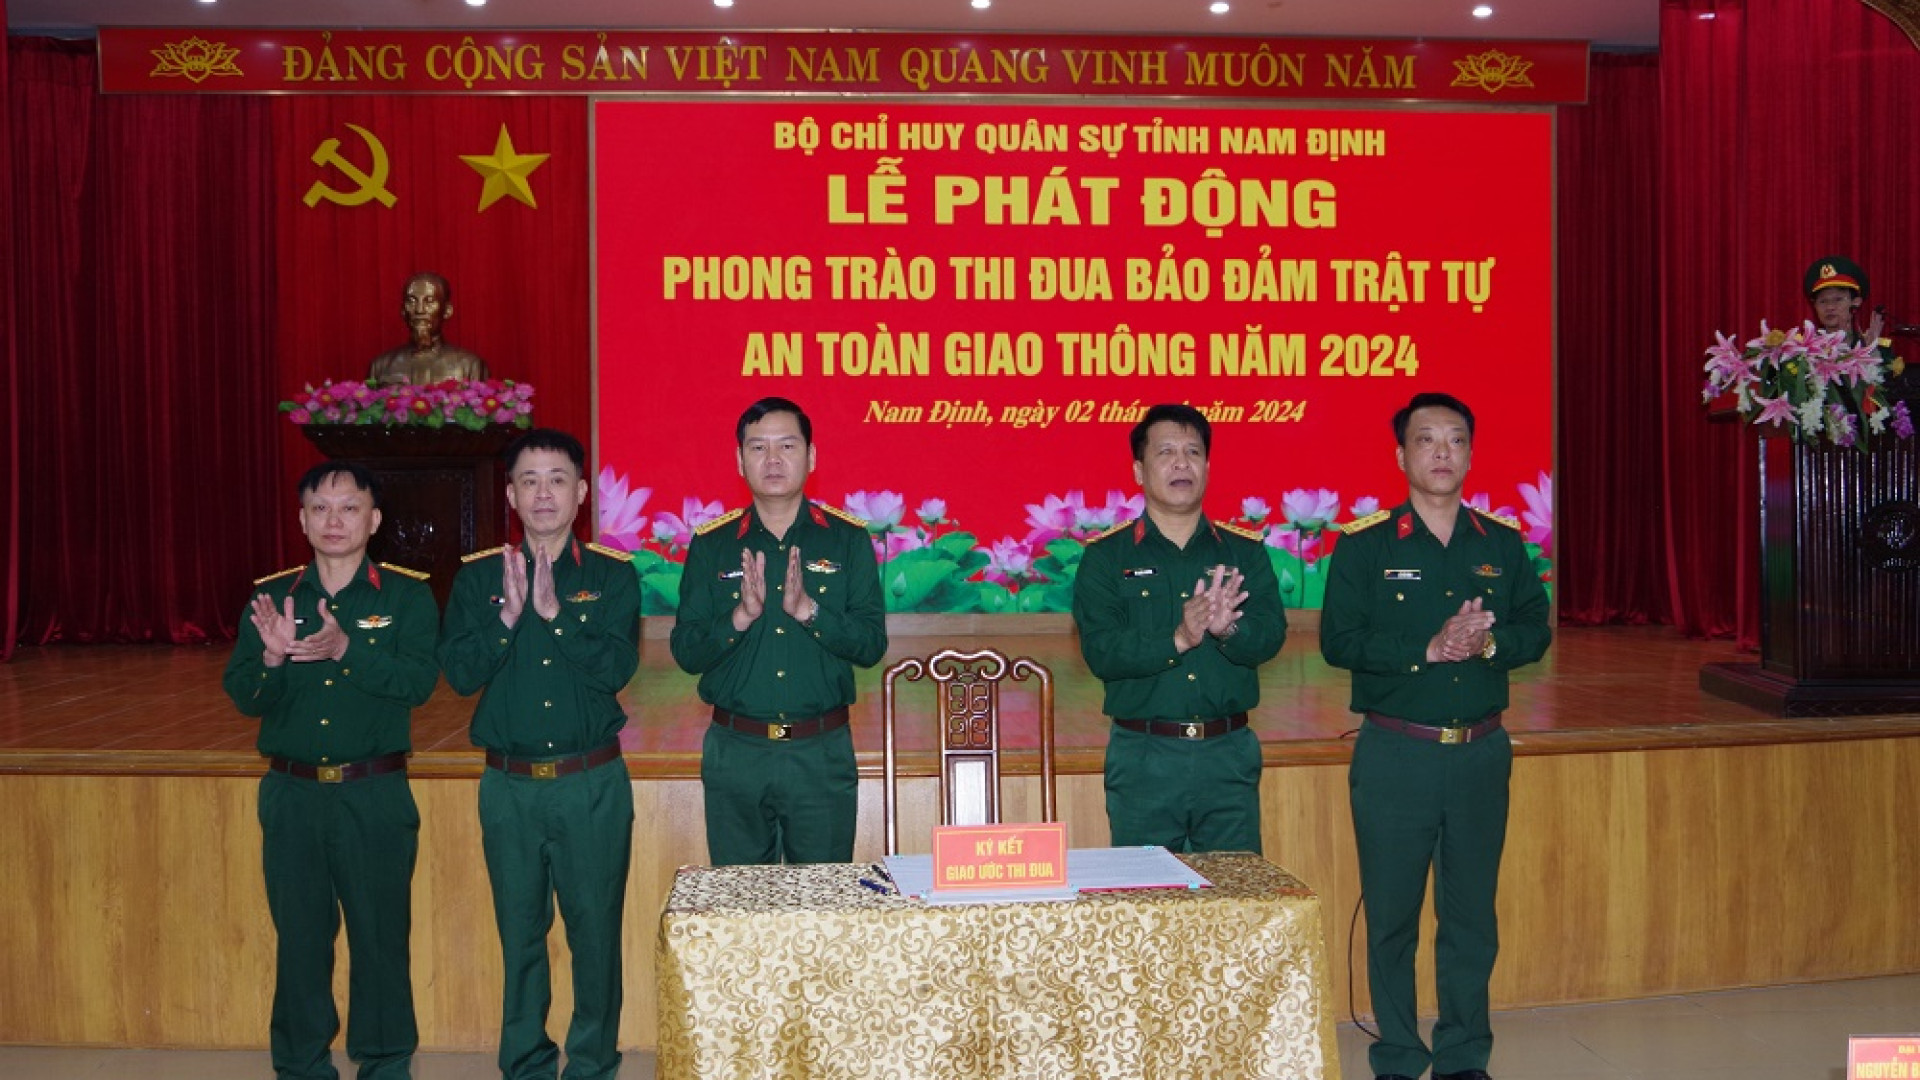 Bộ CHQS tỉnh Nam Định phát động phong trào thi đua bảo đảm trật tự an toàn giao thông năm 2024